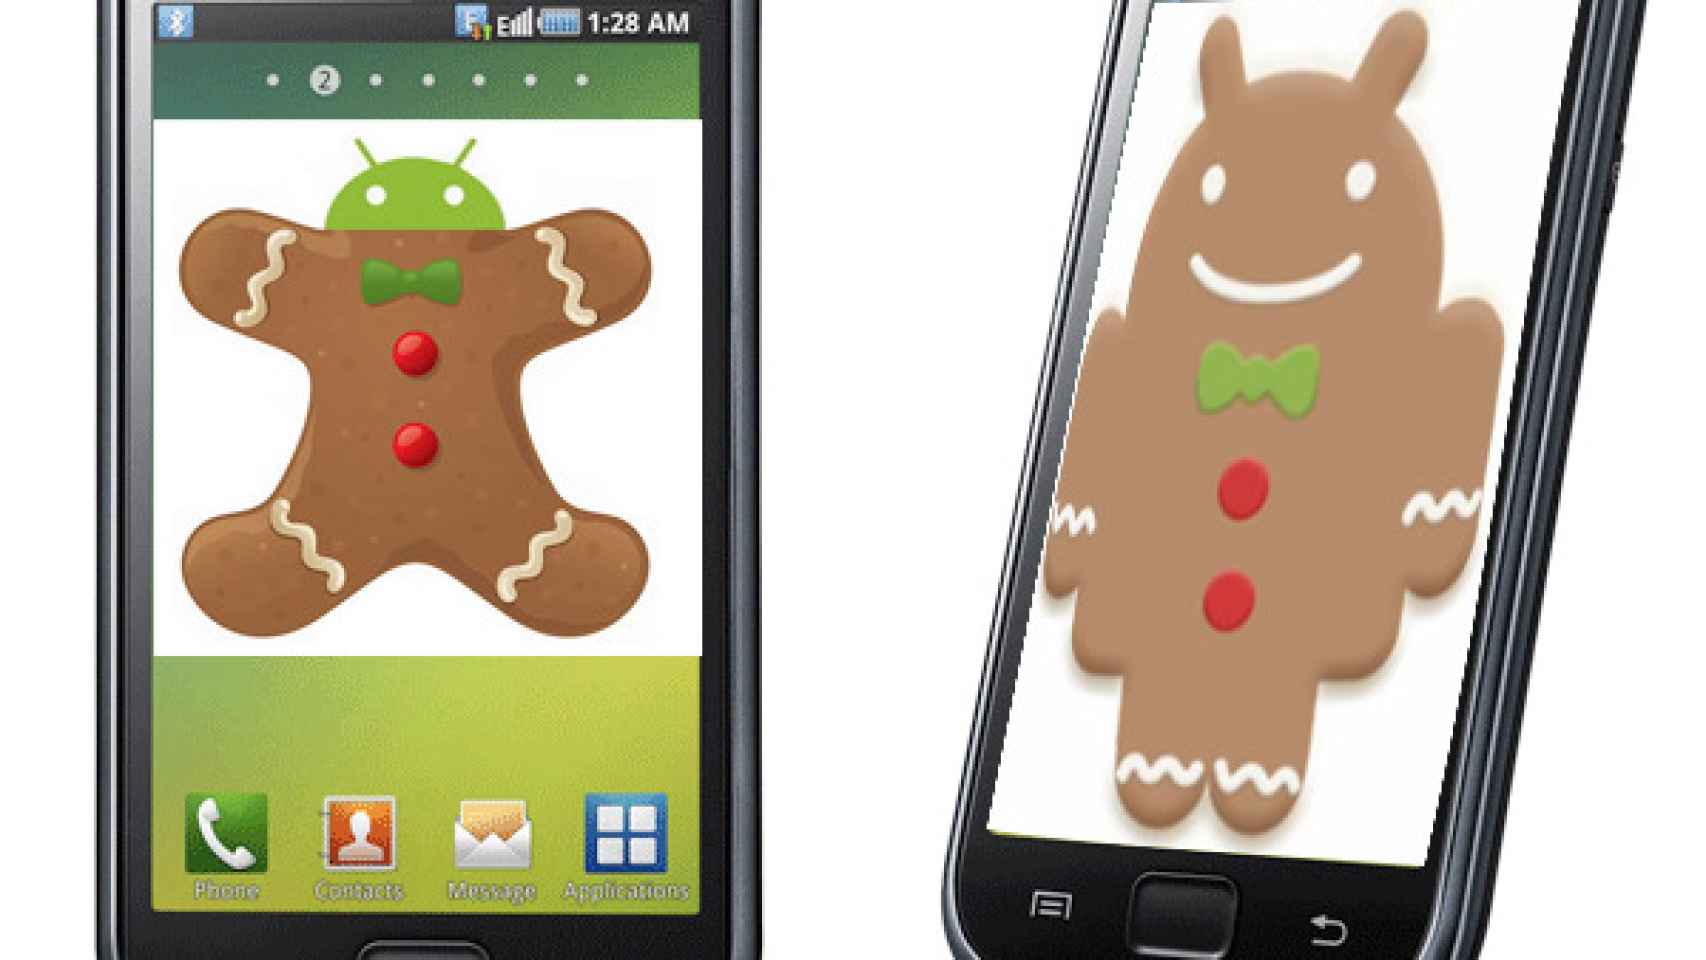 Android 2.3.3 Gingerbread disponible para Samsung Galaxy S: instalación y novedades